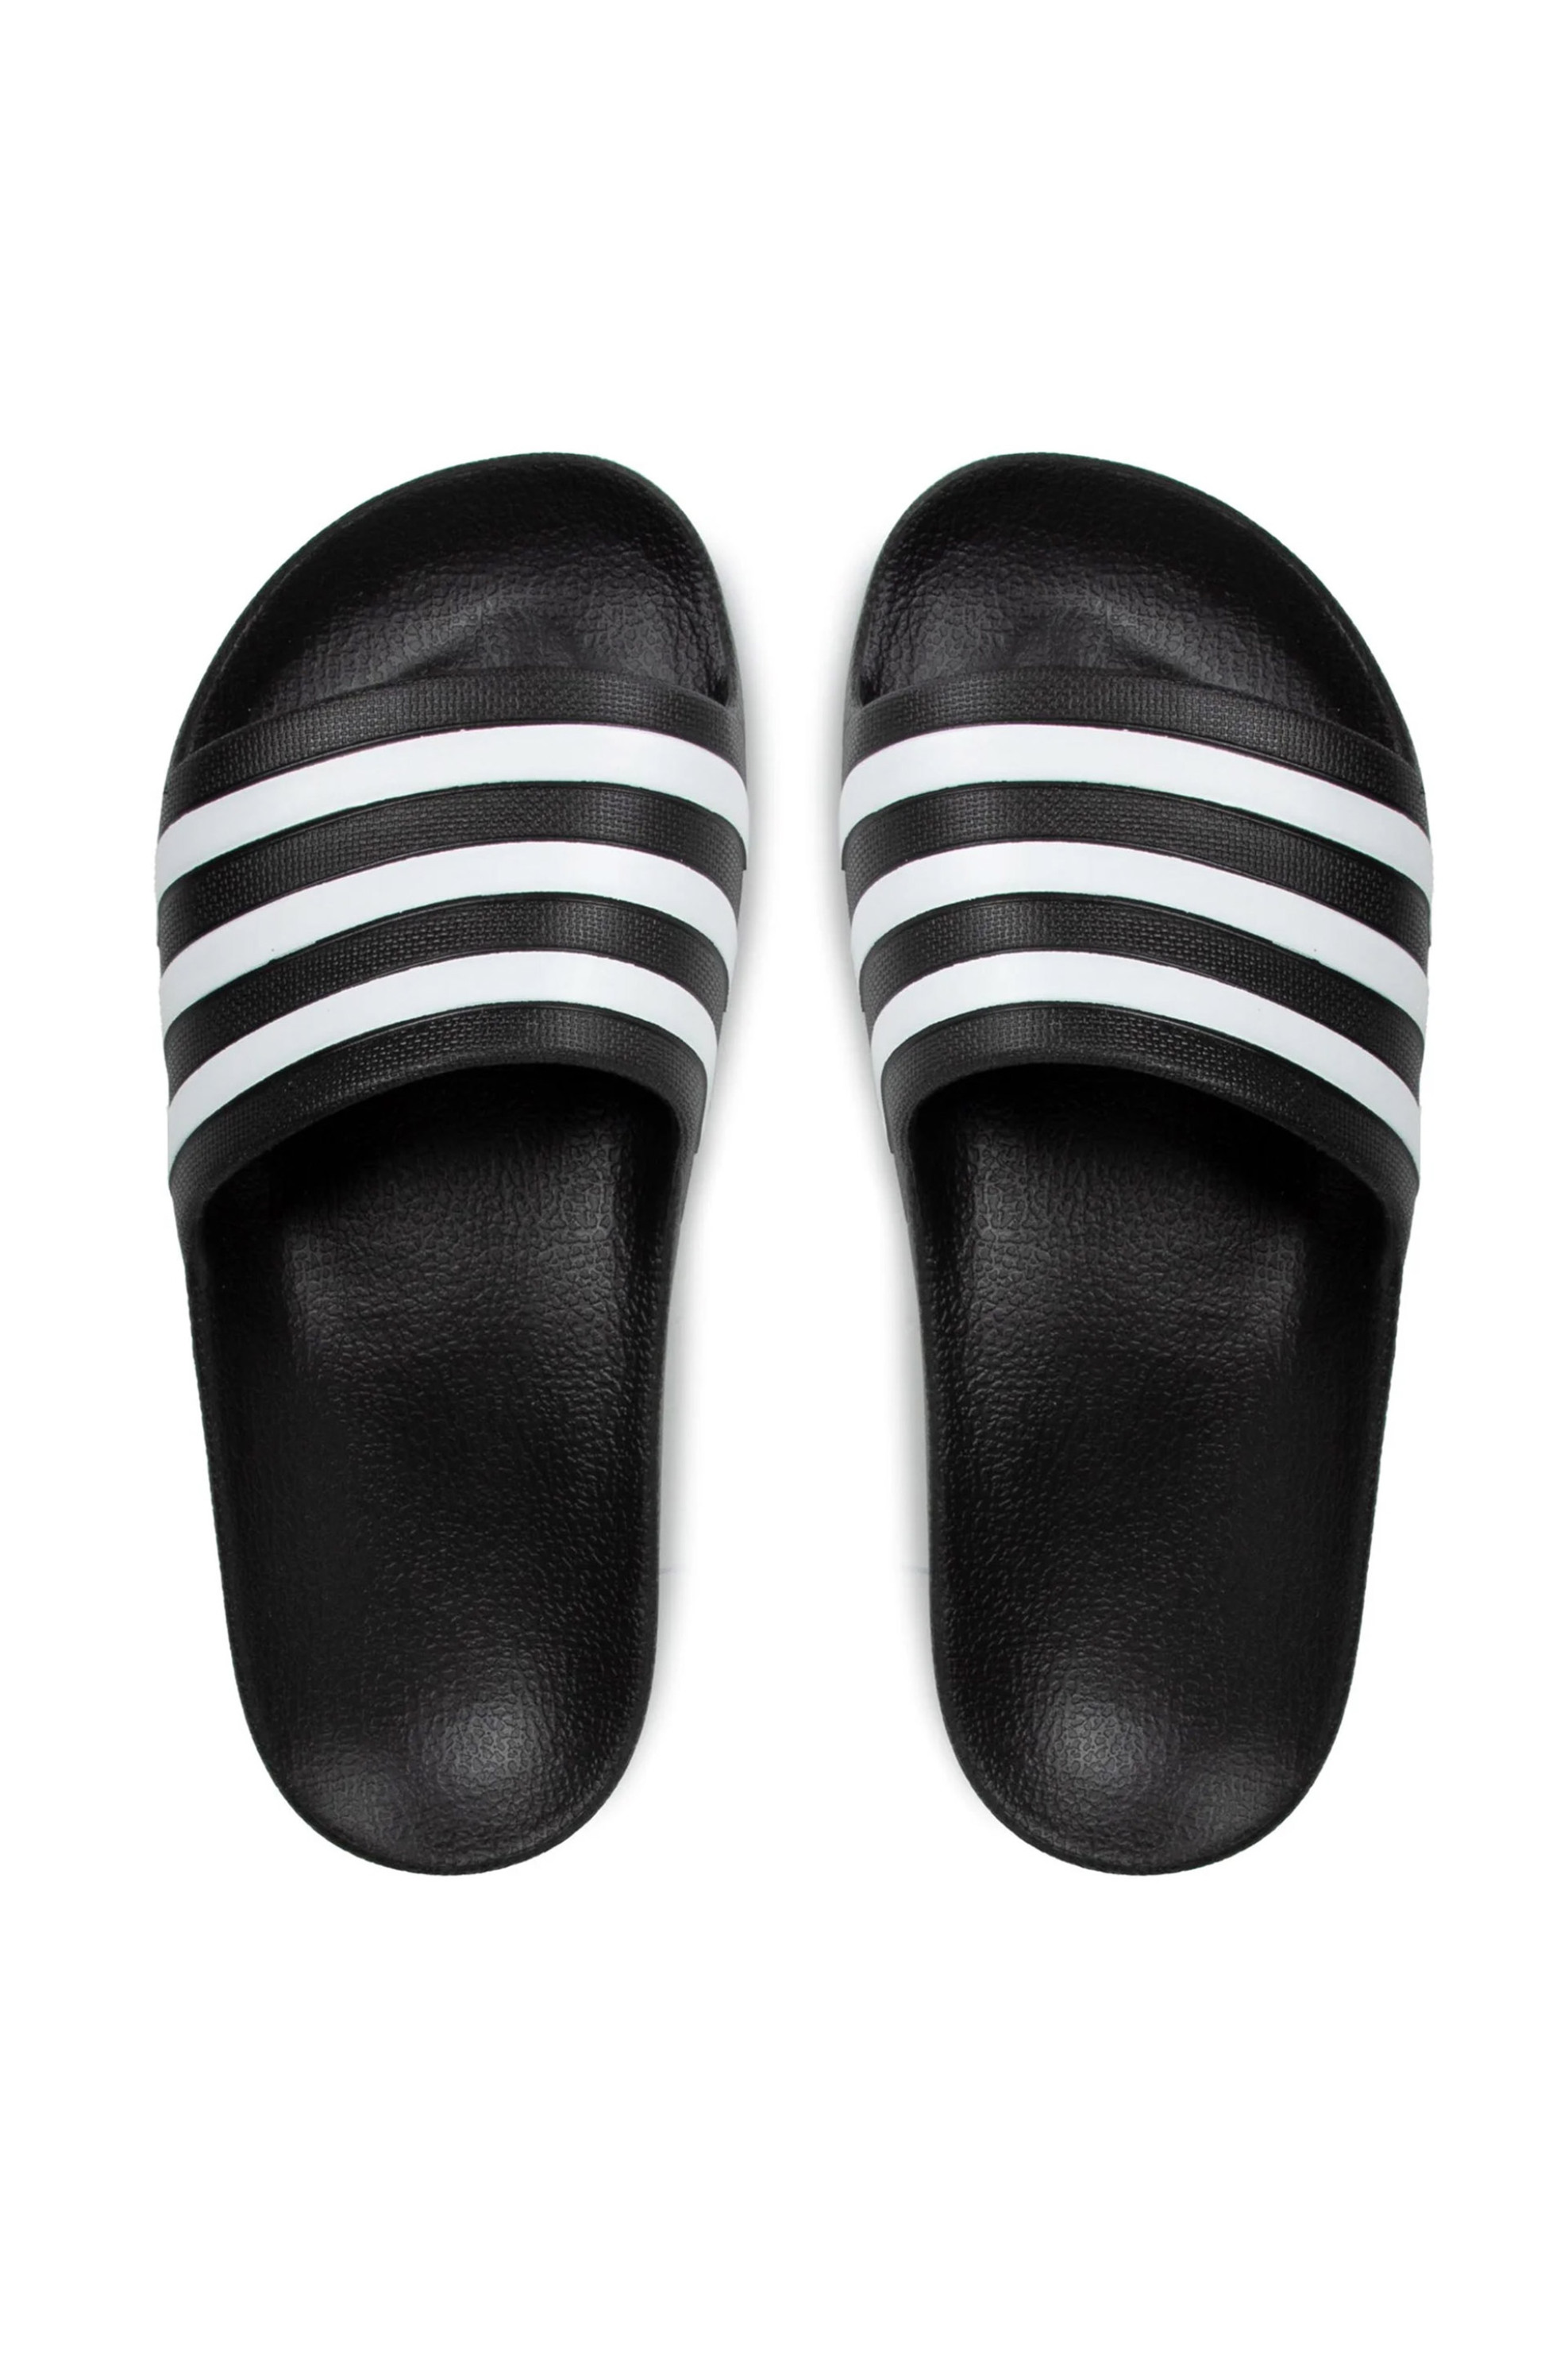 Ανδρική Μόδα > Ανδρικά Παπούτσια > Ανδρικές Παντόφλες & Σαγιονάρες Adidas unisex σαγιονάρες με άνετο πάτο Cloudfoam "Adilette Aqua Slides" - F35543 Μαύρο